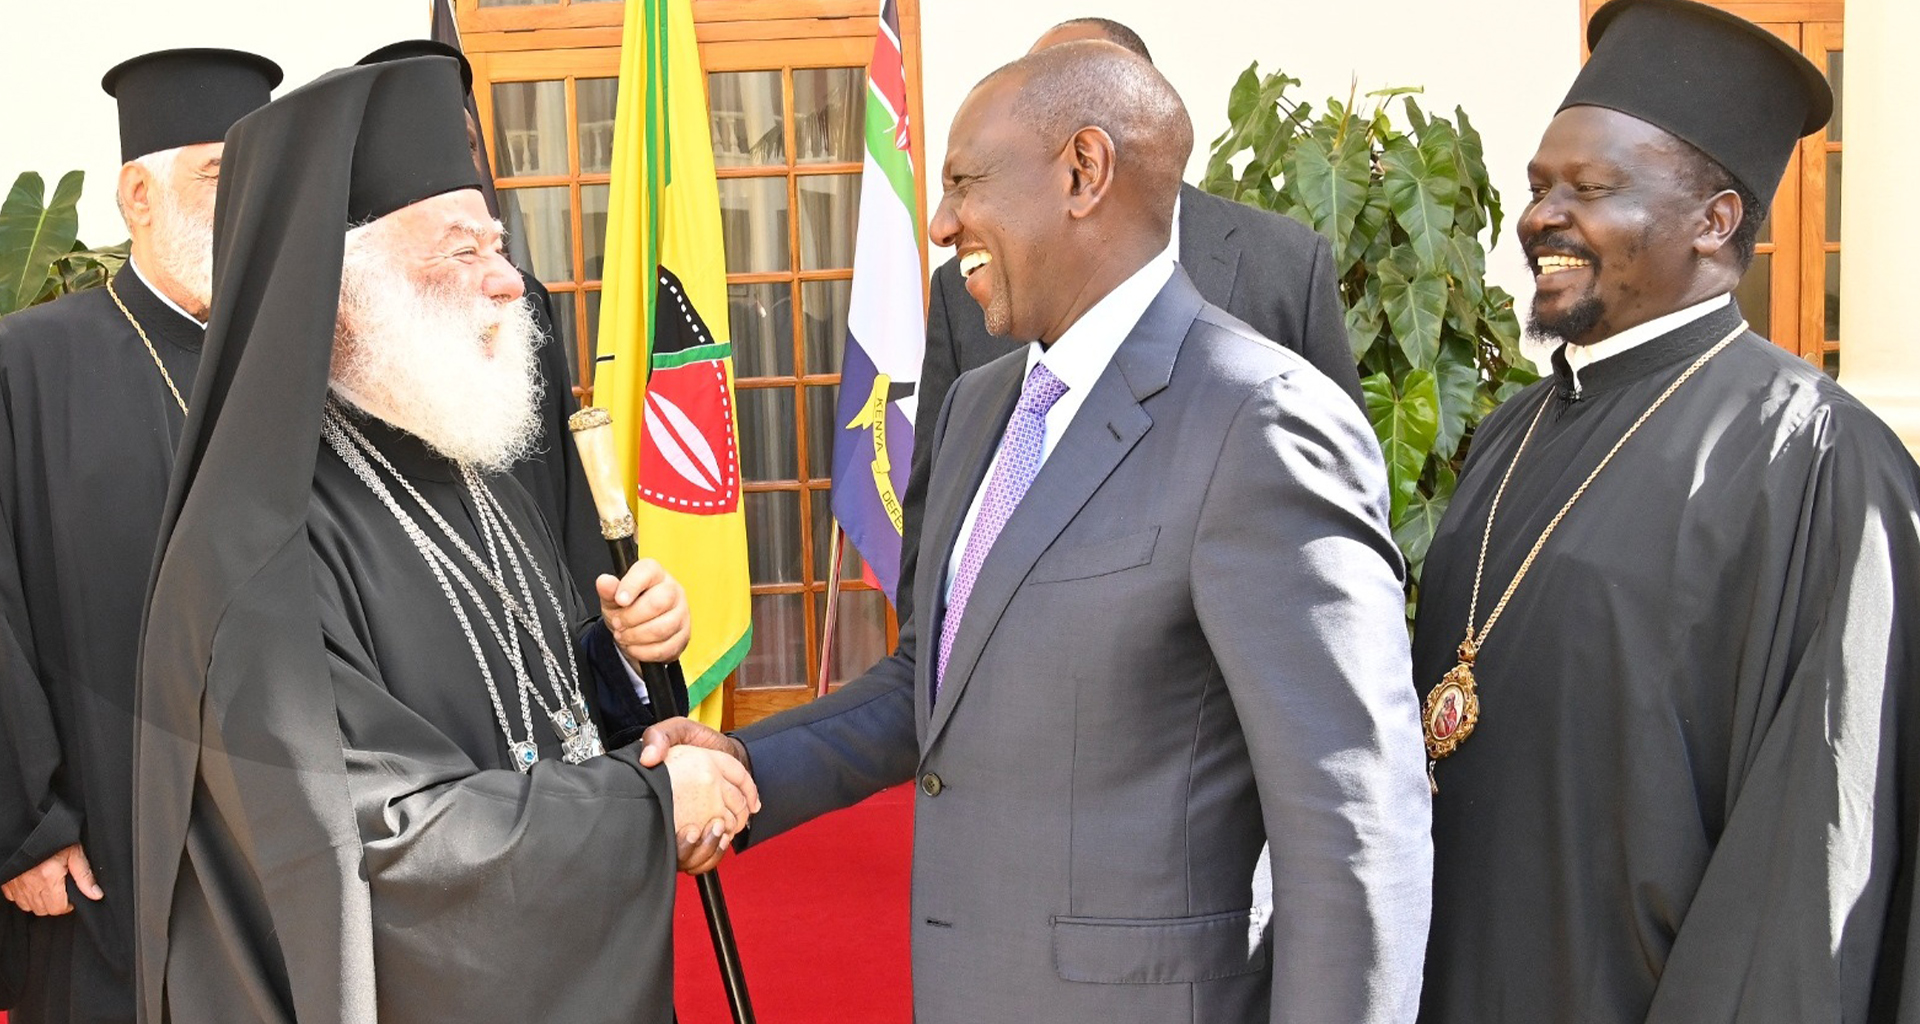 Με τον Πατριάρχη Αλεξανδρείας συναντήθηκε ο Πρόεδρος της Δημοκρατίας της Κένυας